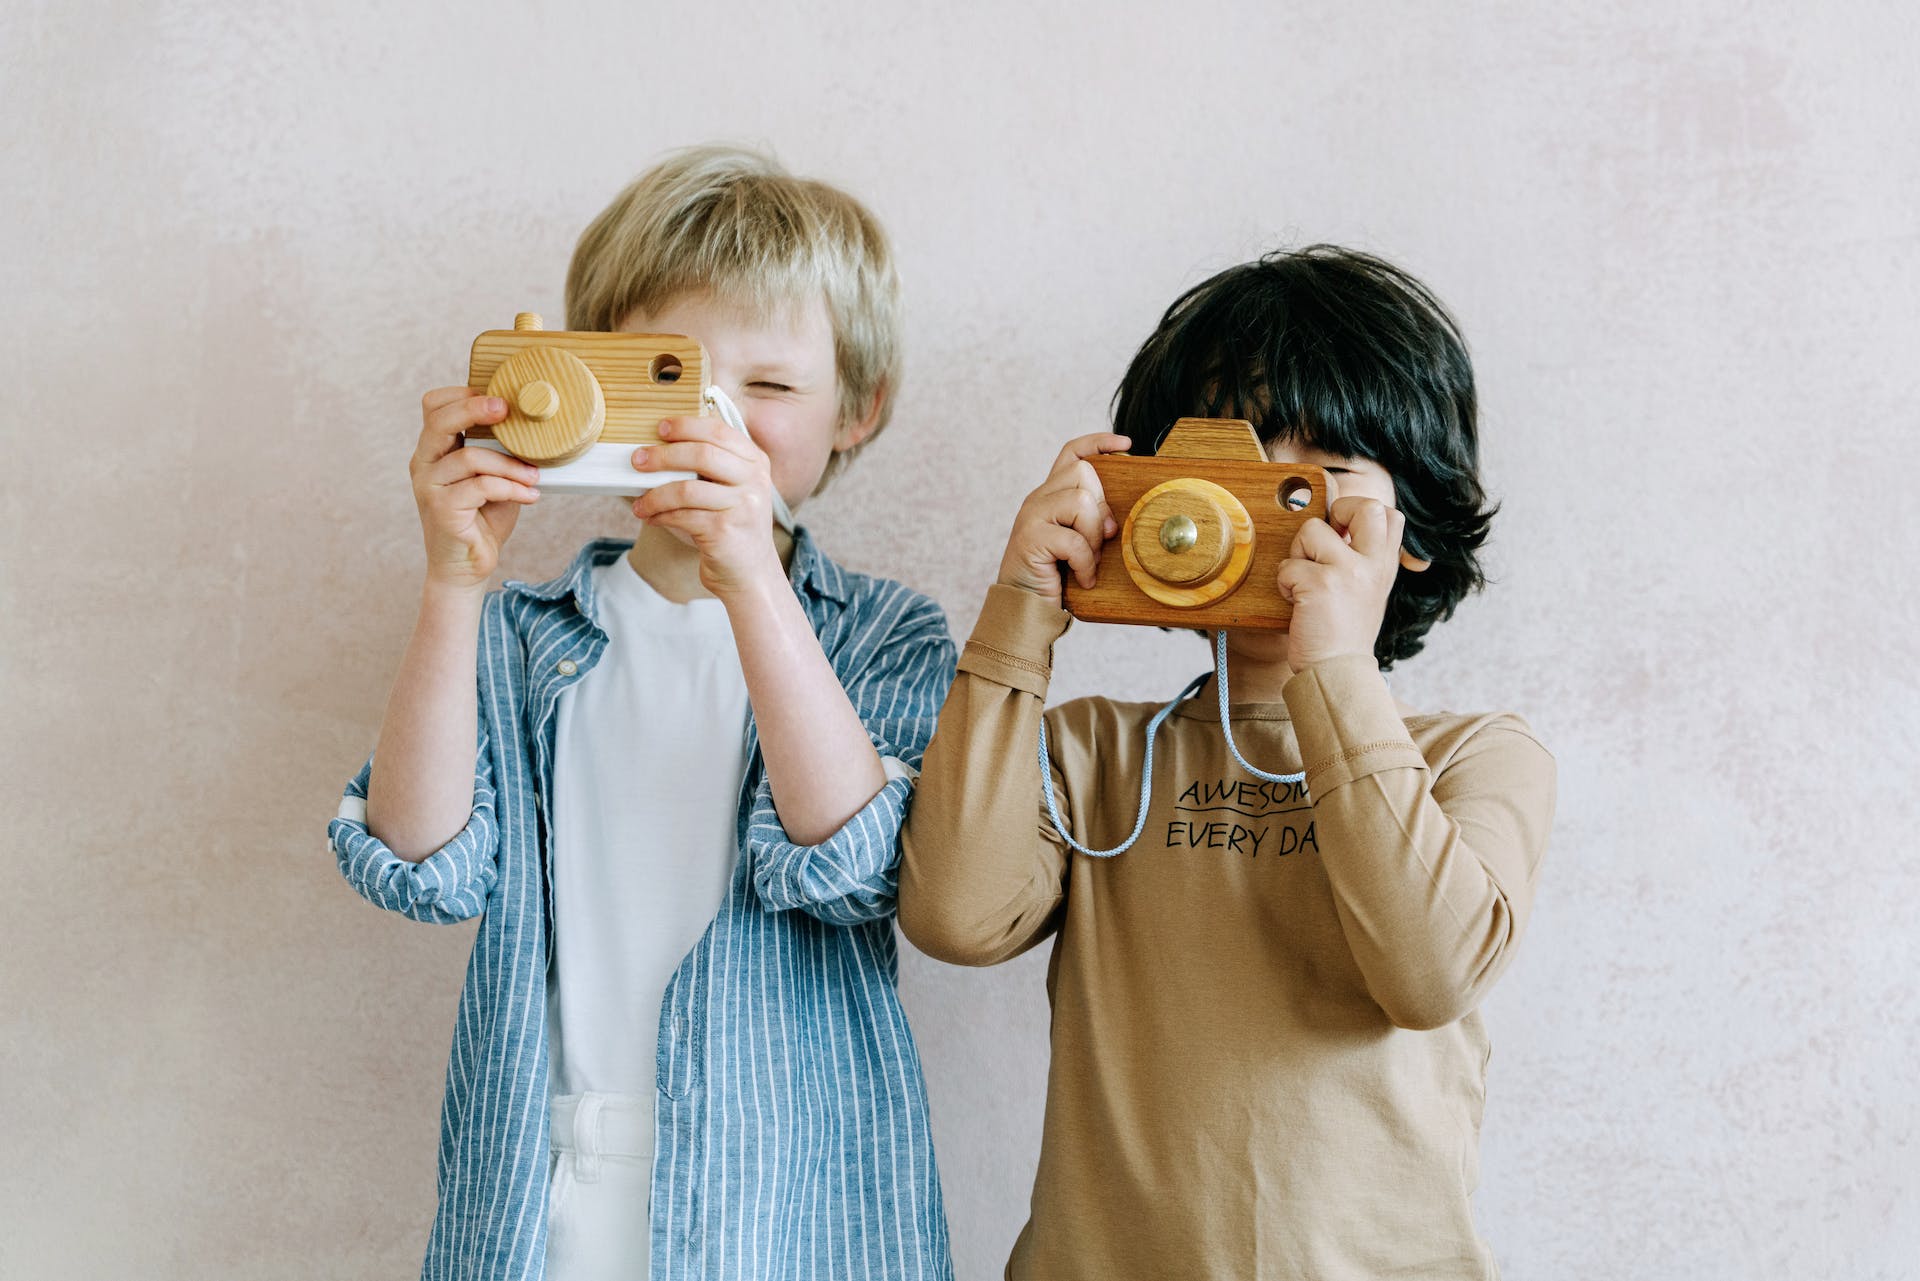 Zwei Jungen spielen mit einer Spielzeugkamera | Quelle: Pexels